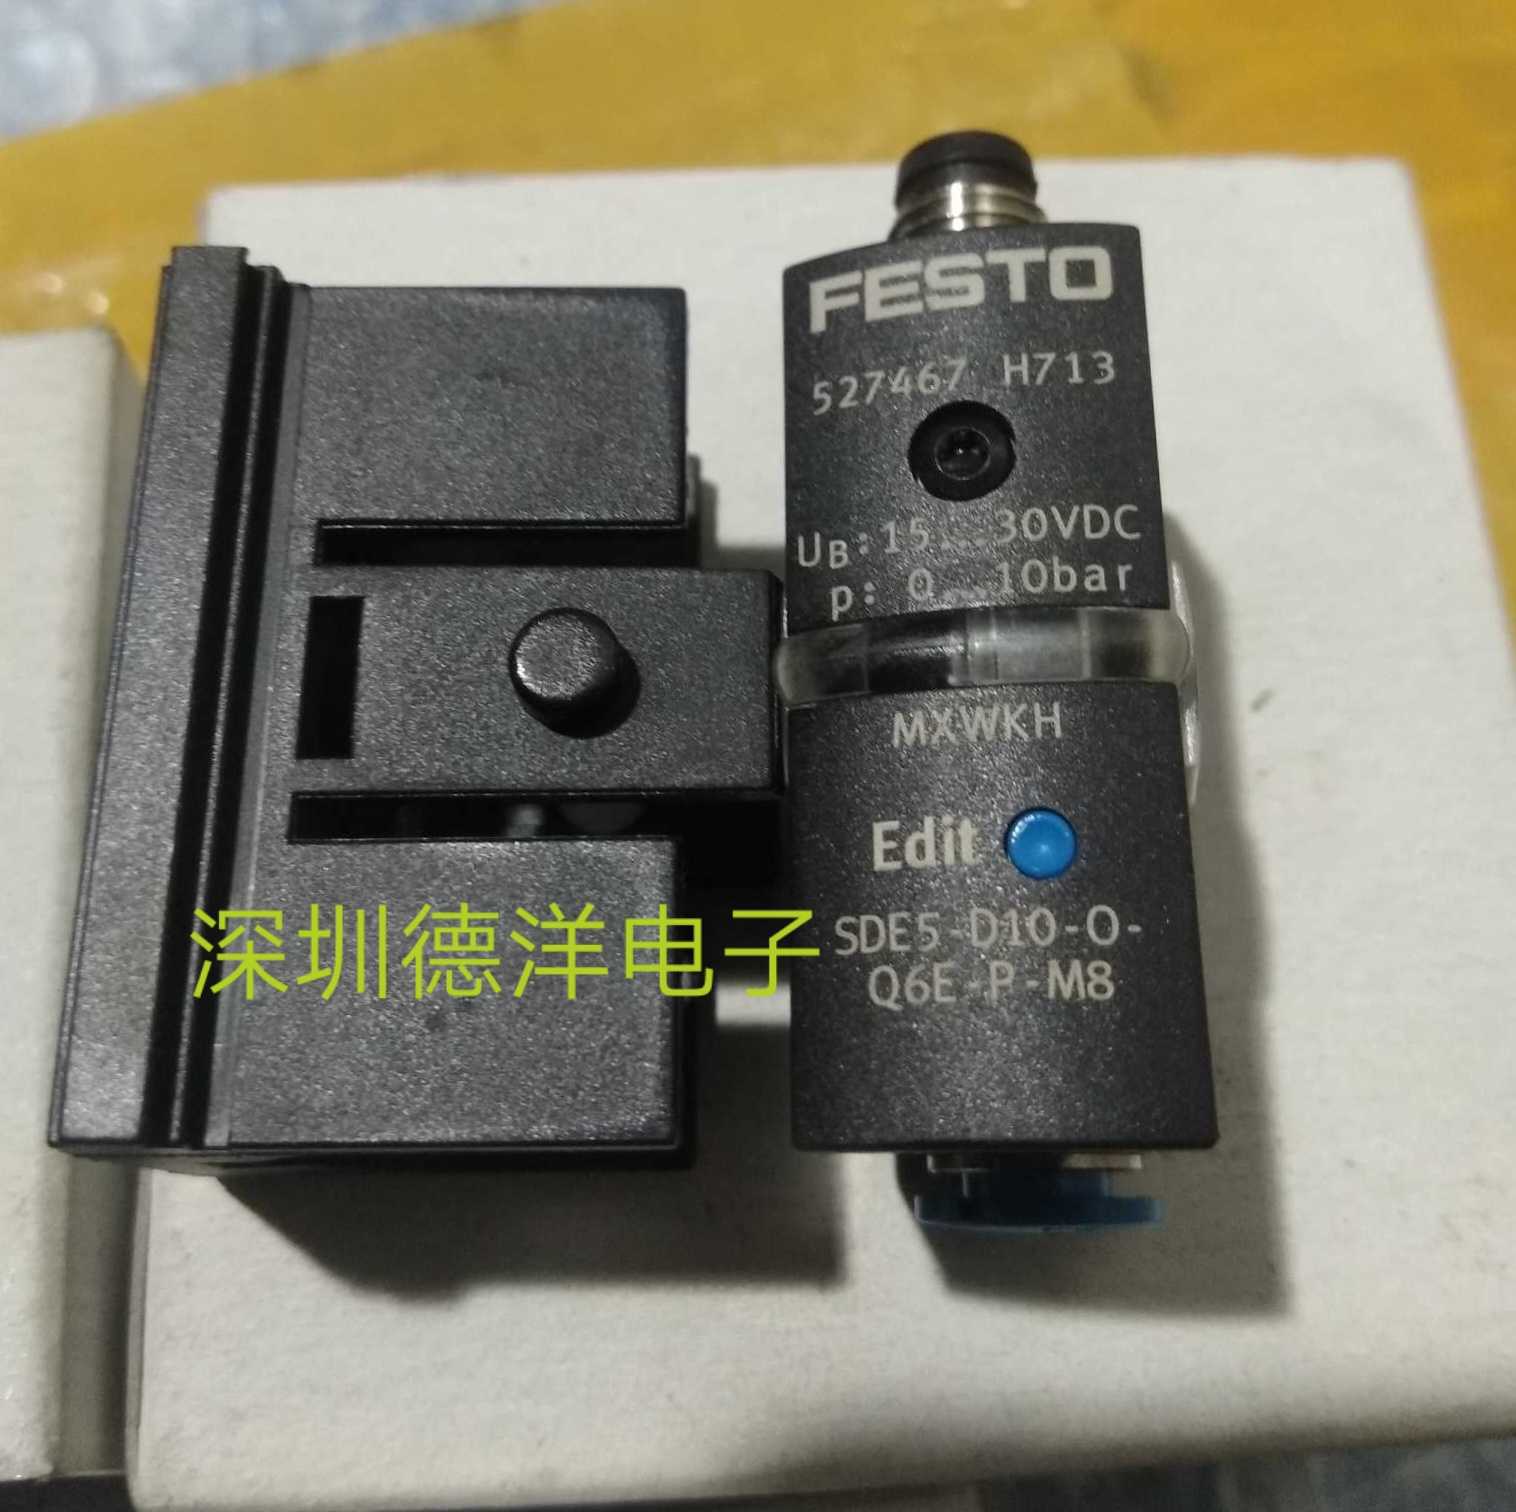 特价全新FESTO SED5-E10-O-Q6E-P-M8-3X费斯托压力传感器原装正品